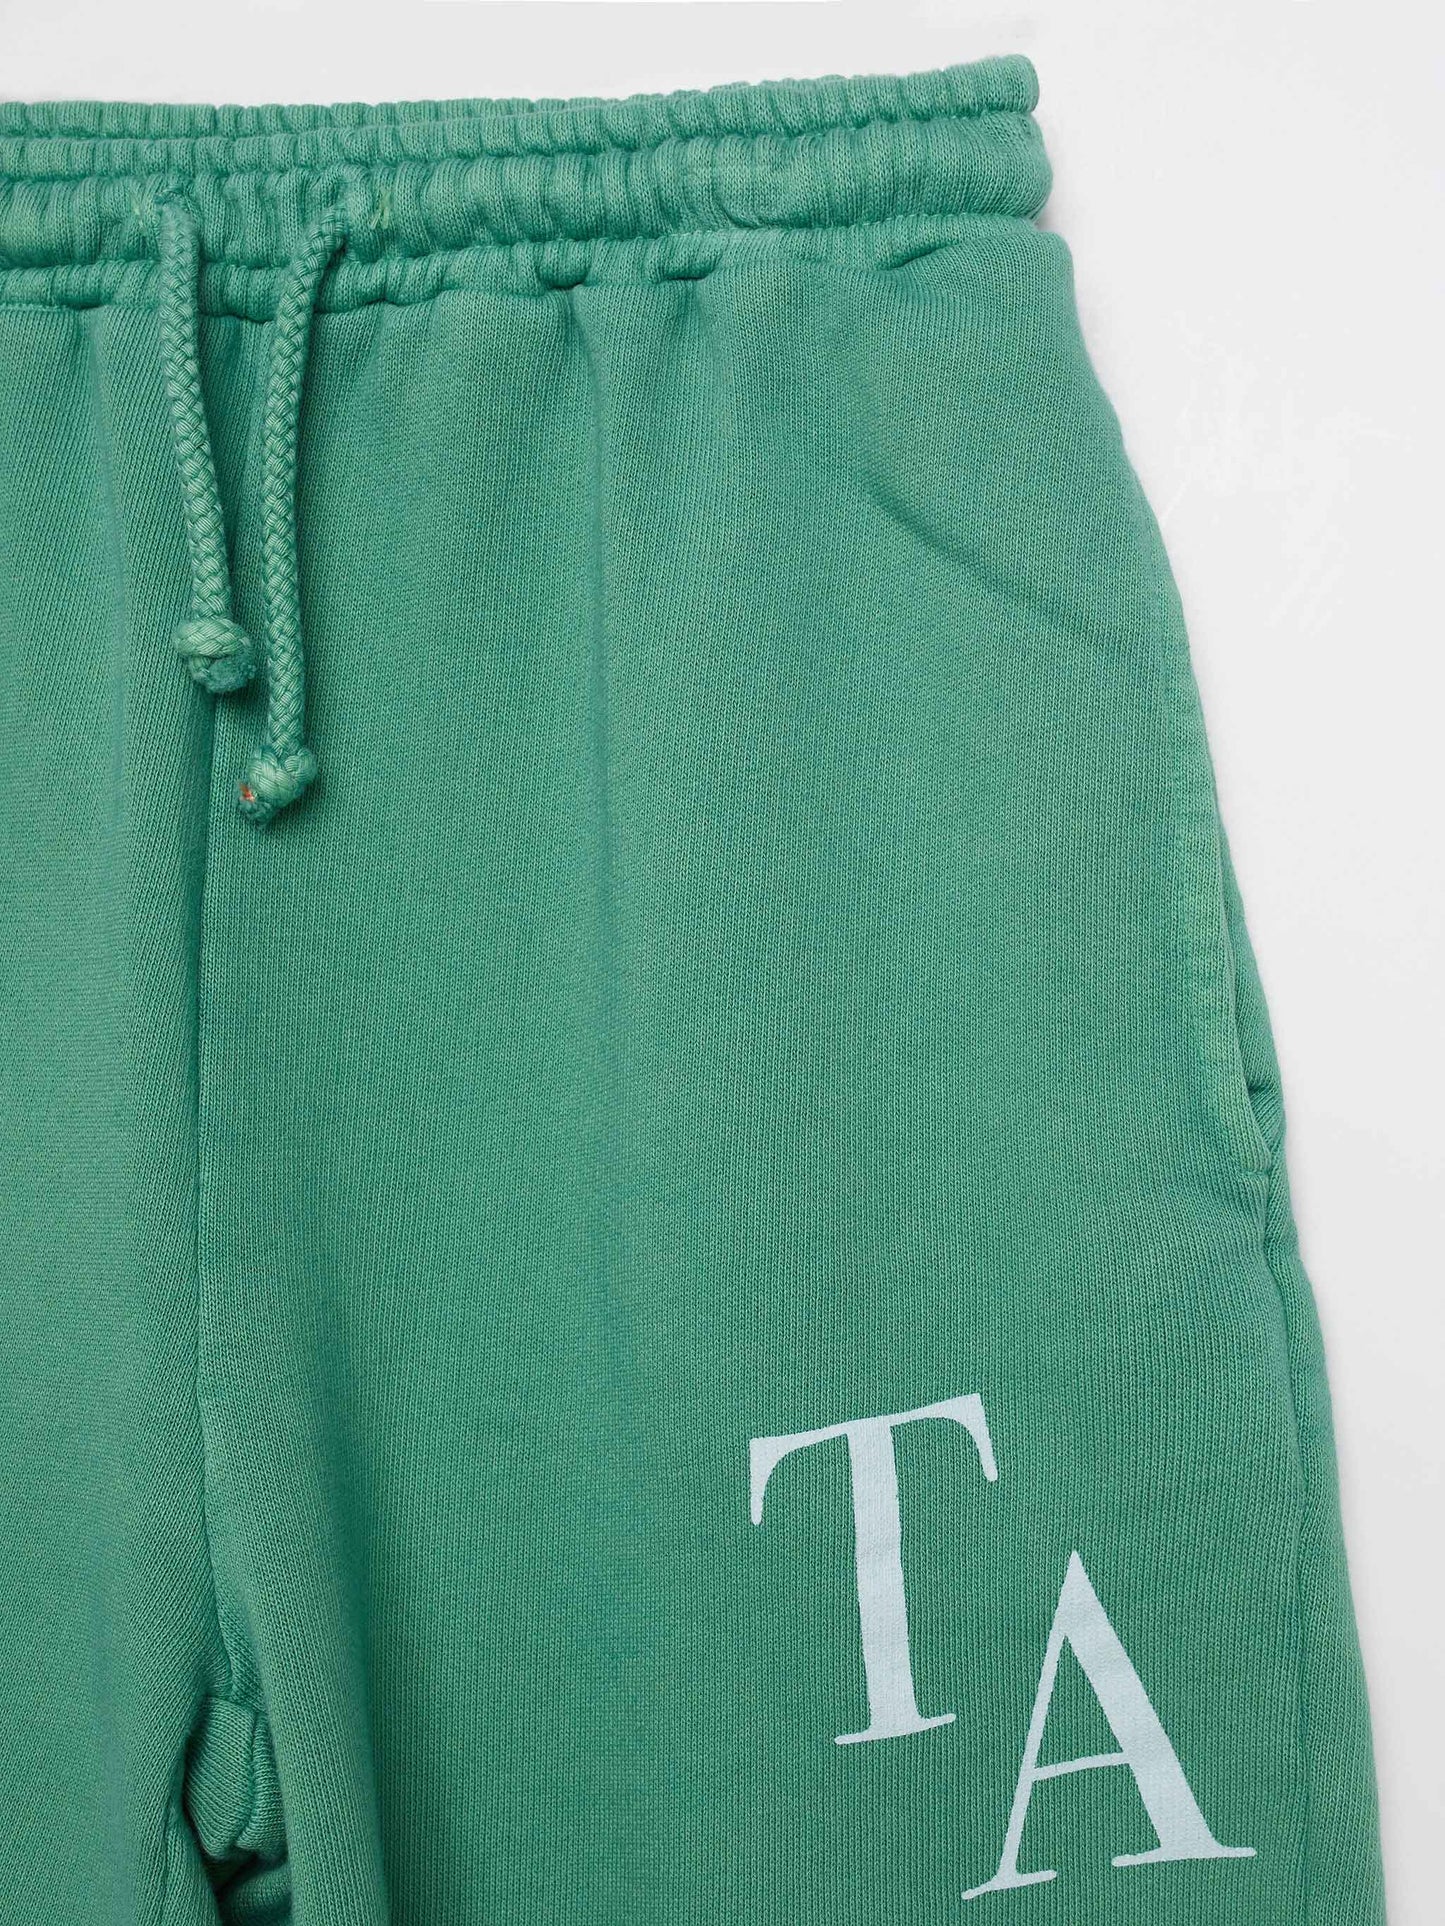 Shorts nº01 Soft Green